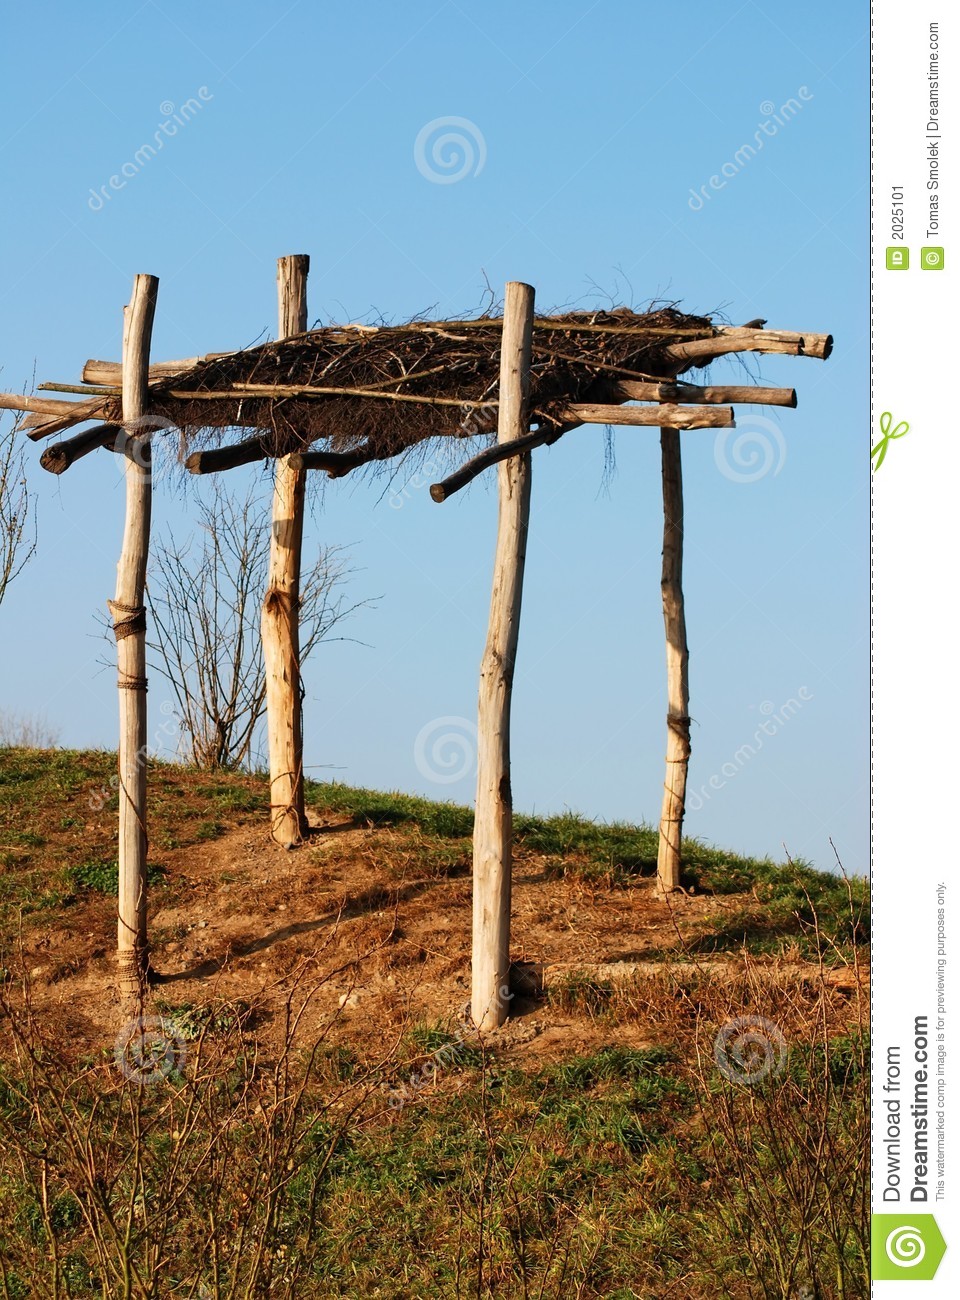 Wooden Shanty Stock Image   Image  2025101